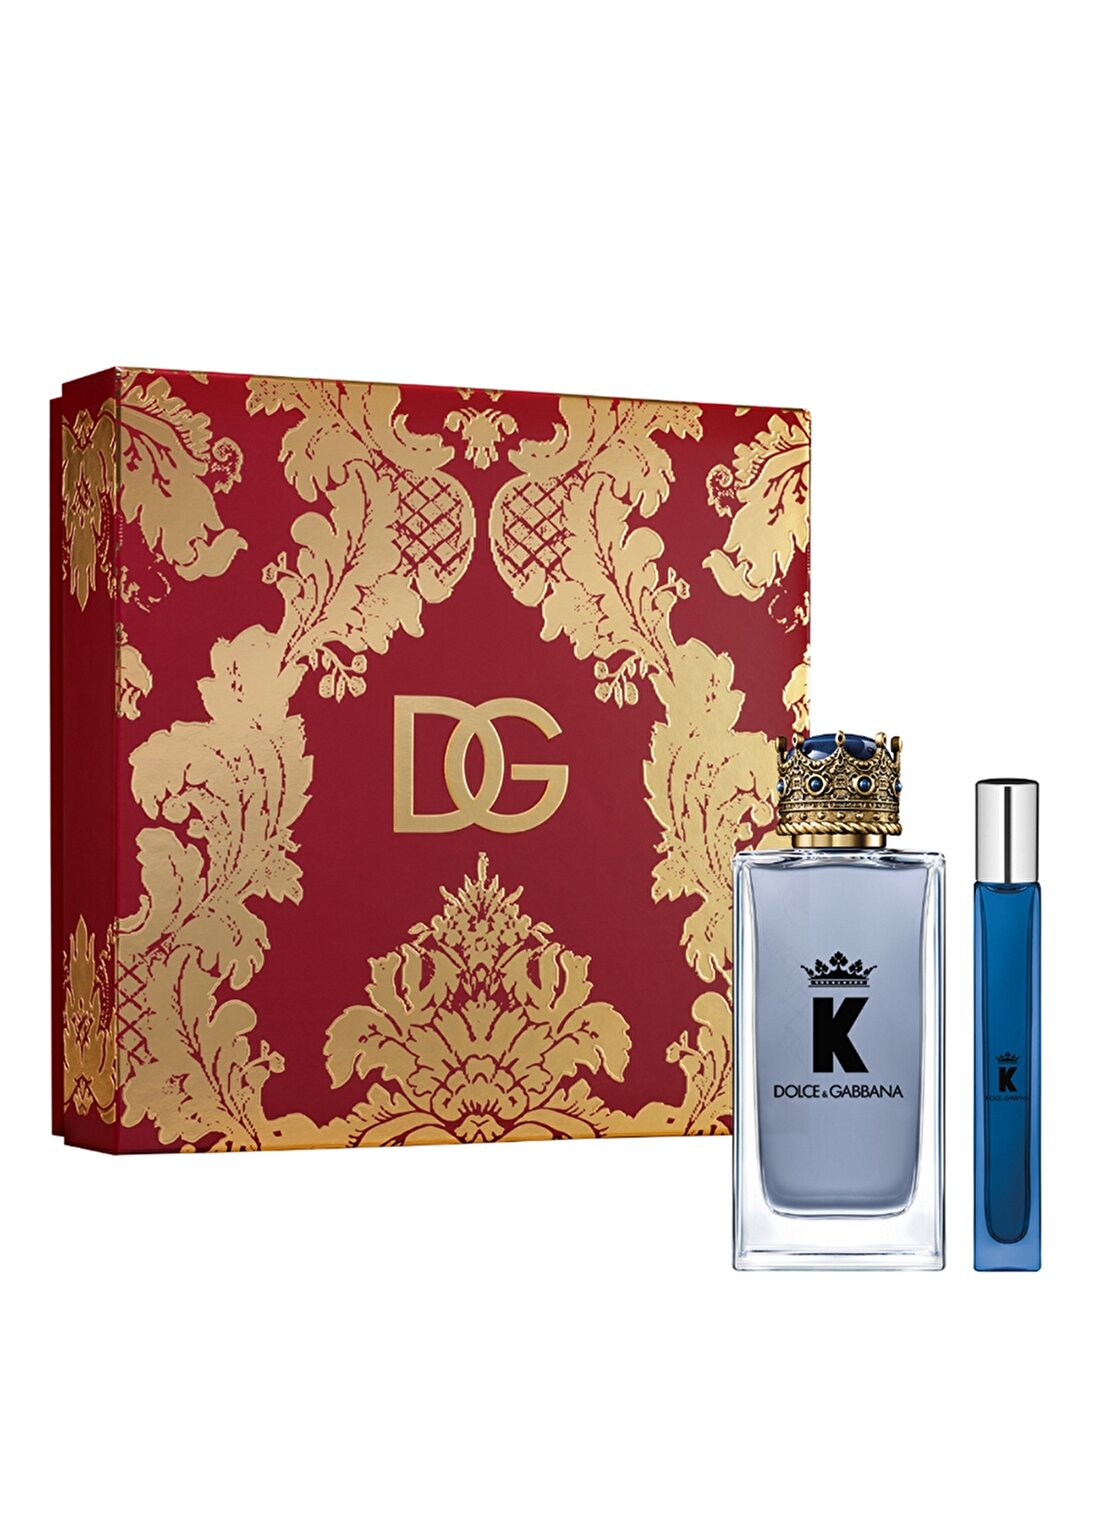 Dolce&Gabbana K Edt 100 Ml+K Edp Travel Spray 10 Ml